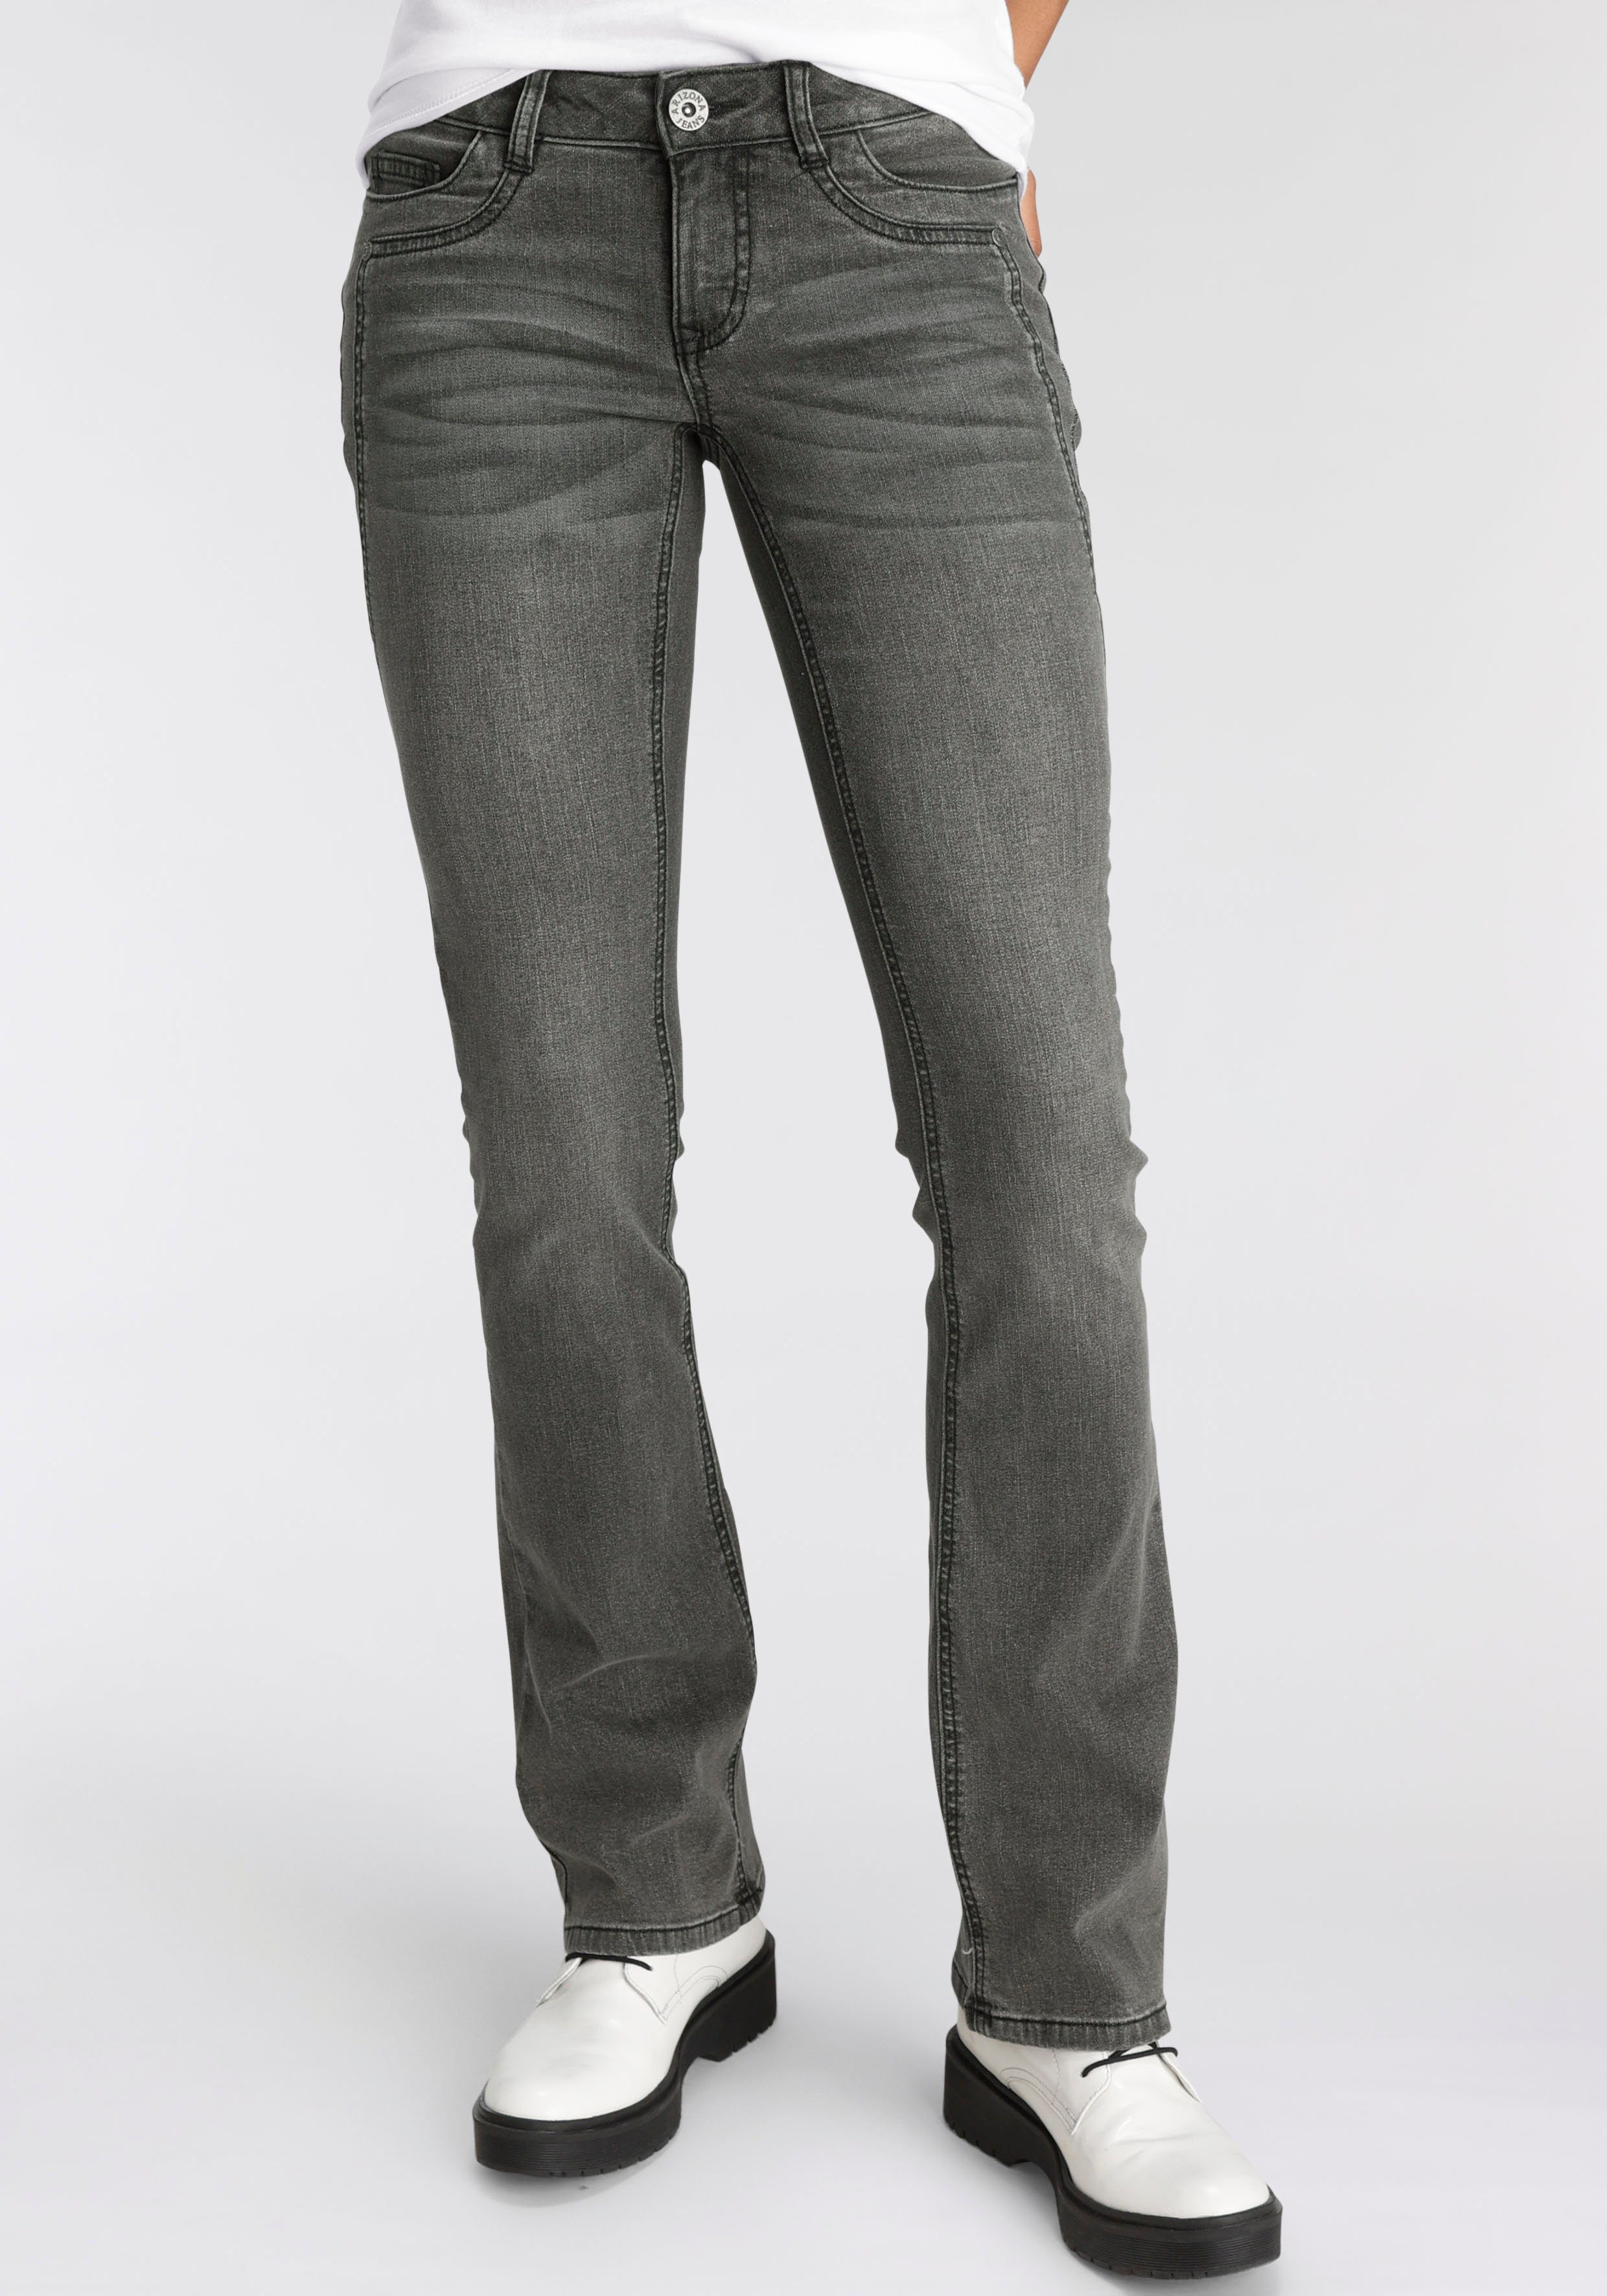 Günstige Jeans kaufen » Bis zu 30% Rabatt | OTTO